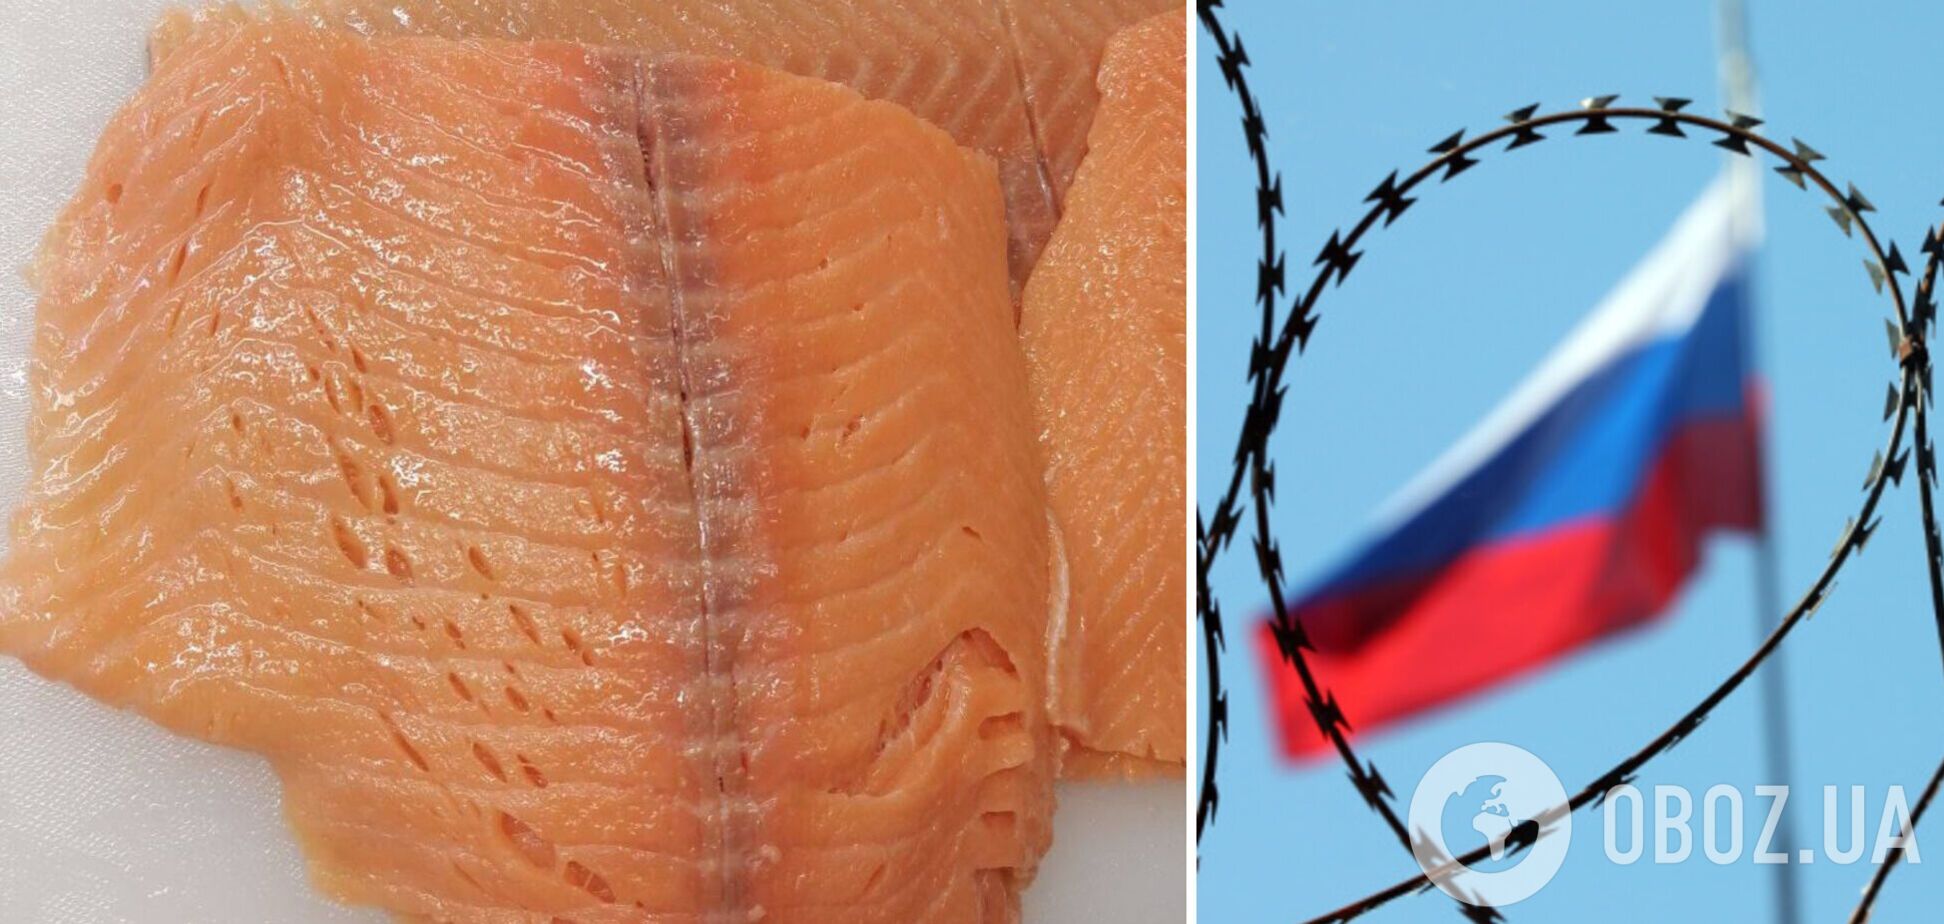 В РФ общепит сократил закупки красной рыбы, а в российской нашли червей и синяки